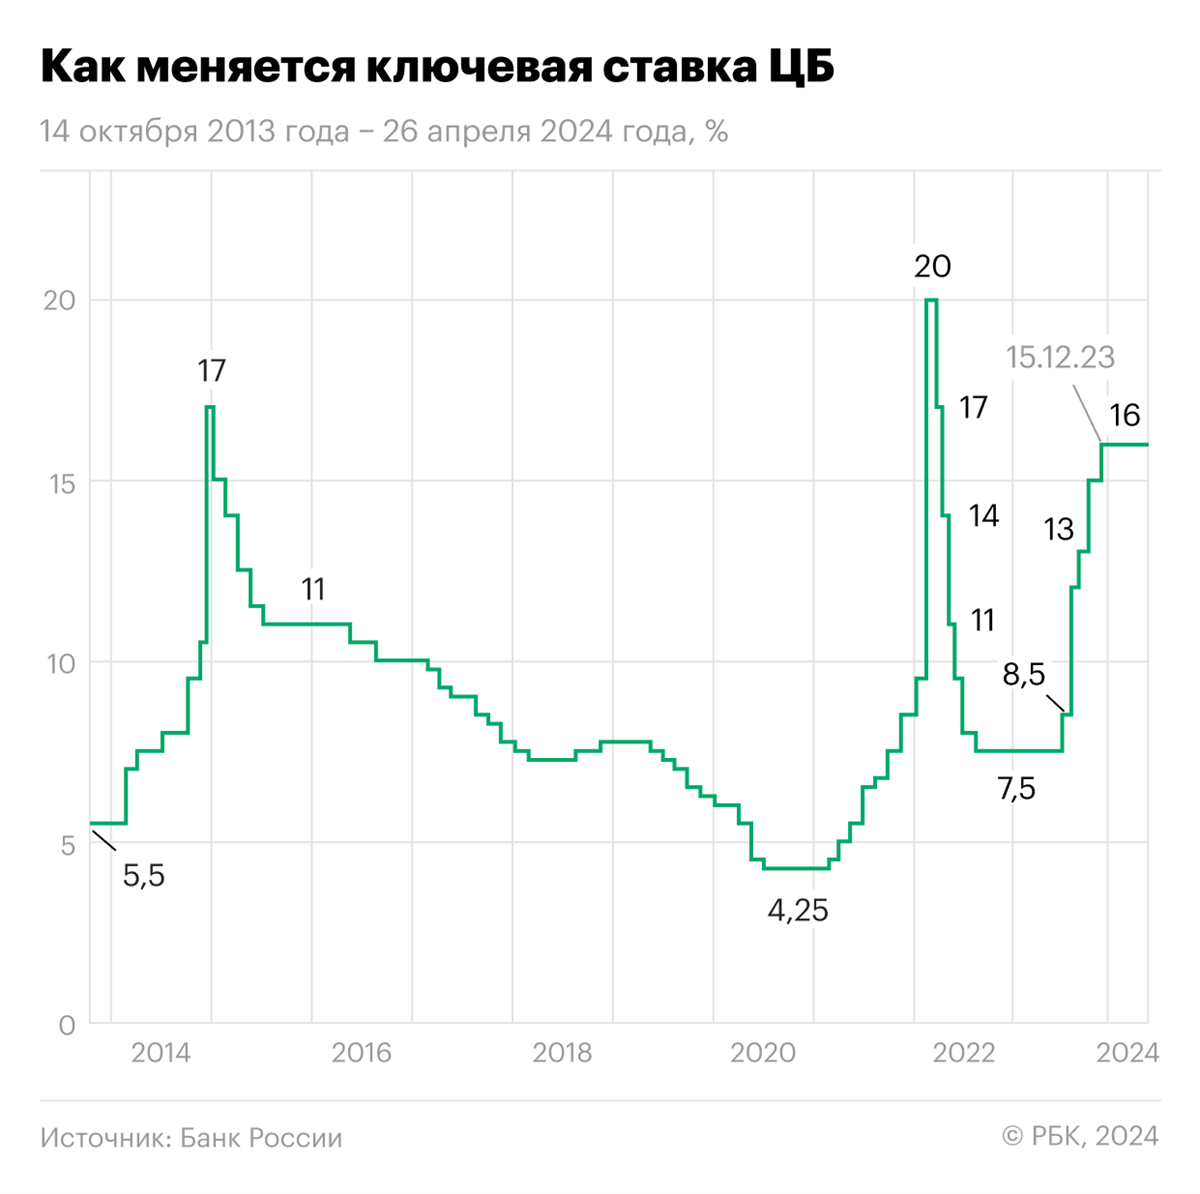 Как менялась ключевая ставка Банка России